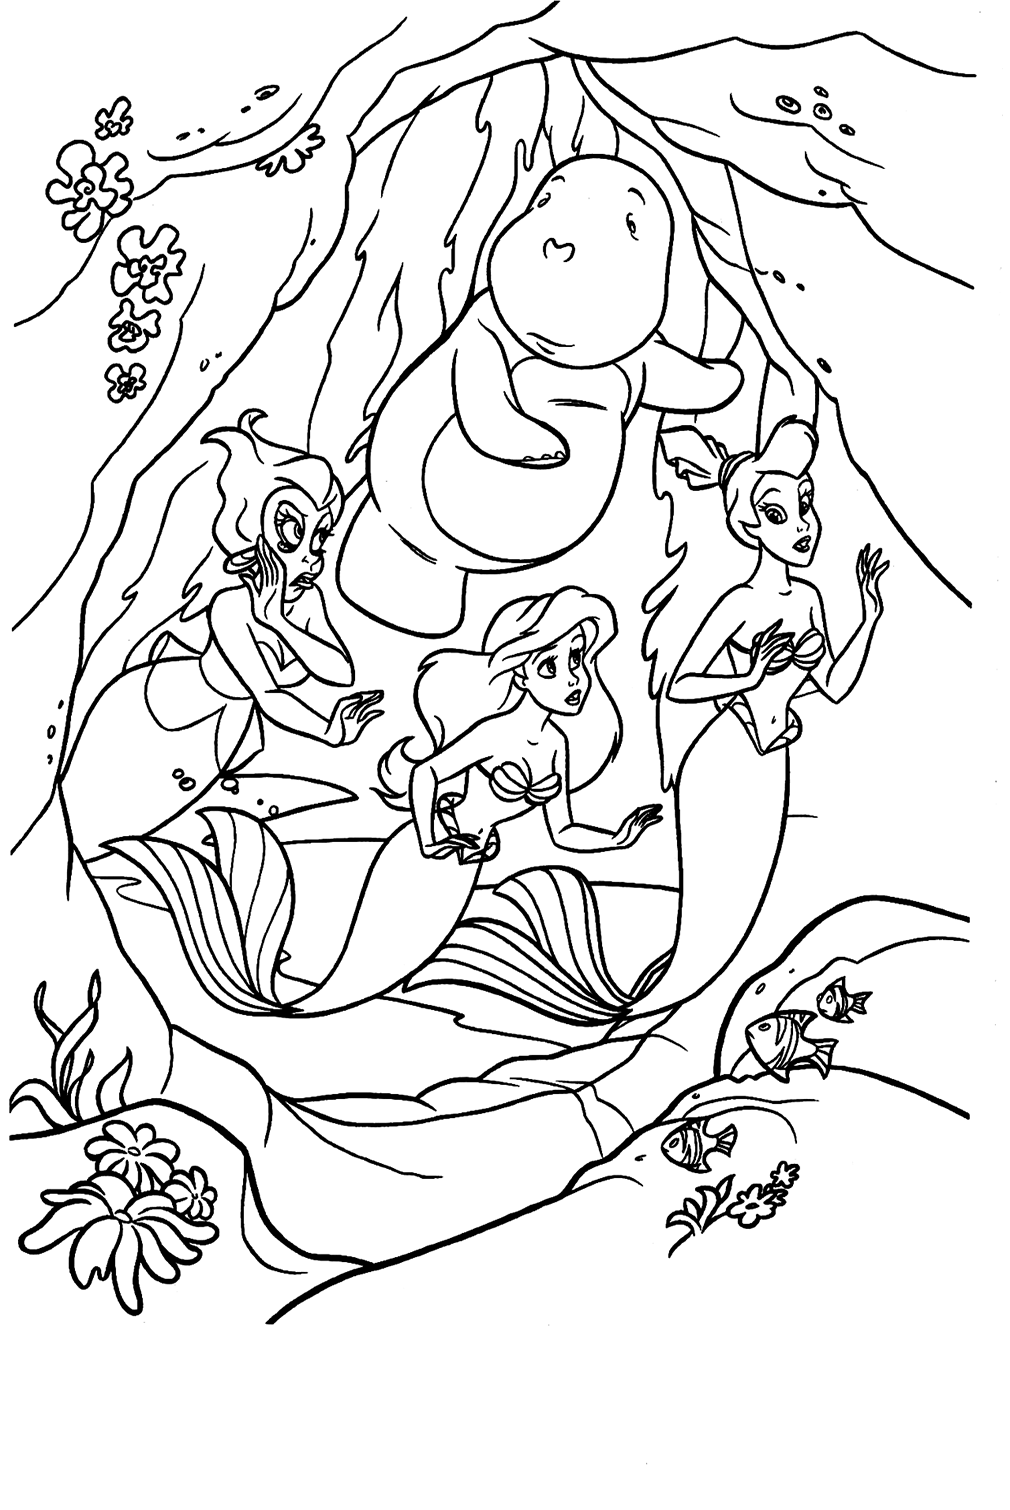 Dibujos para colorear de La Sirenita imprimibles de La Sirenita